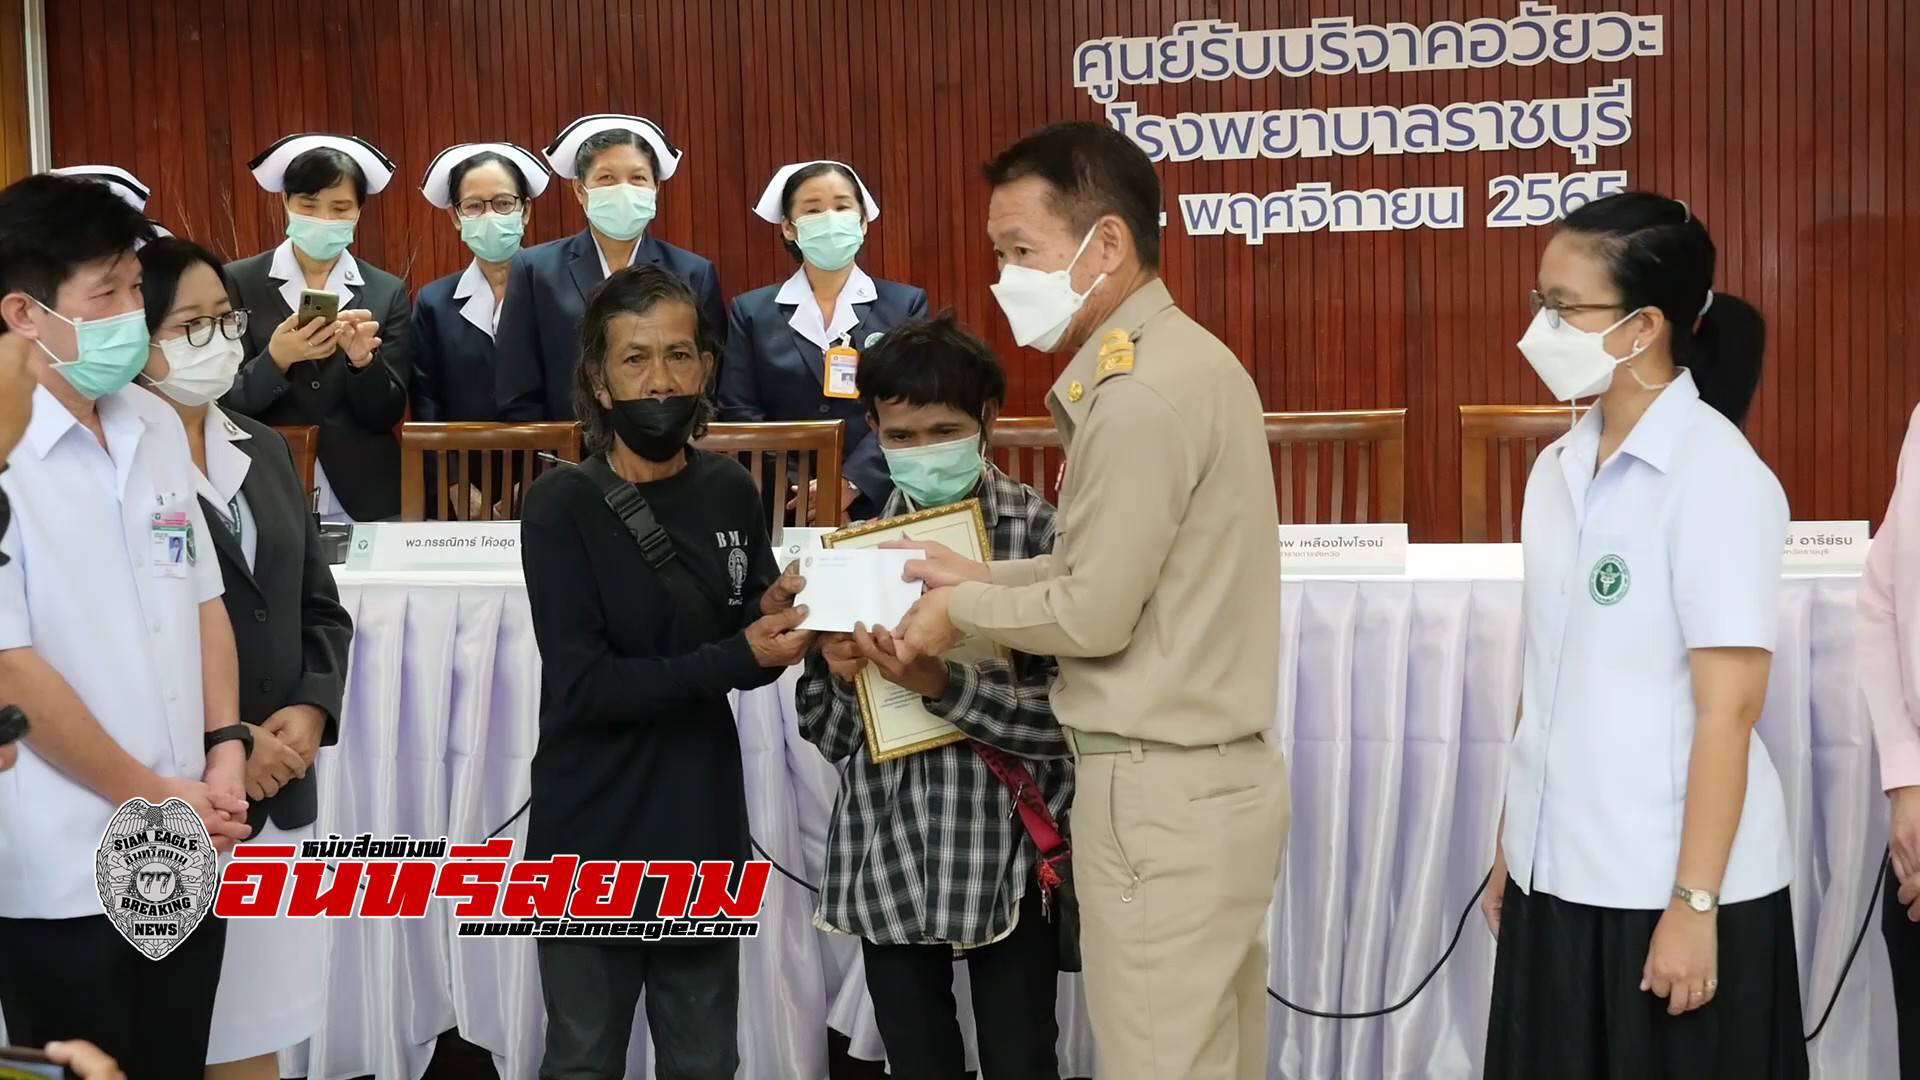 ราชบุรี-“กาชาด”ขอบคุณหนุ่มวัย 24 ปี บริจาคอวัยวะช่วยผู้ป่วยได้ 8 ชีวิต